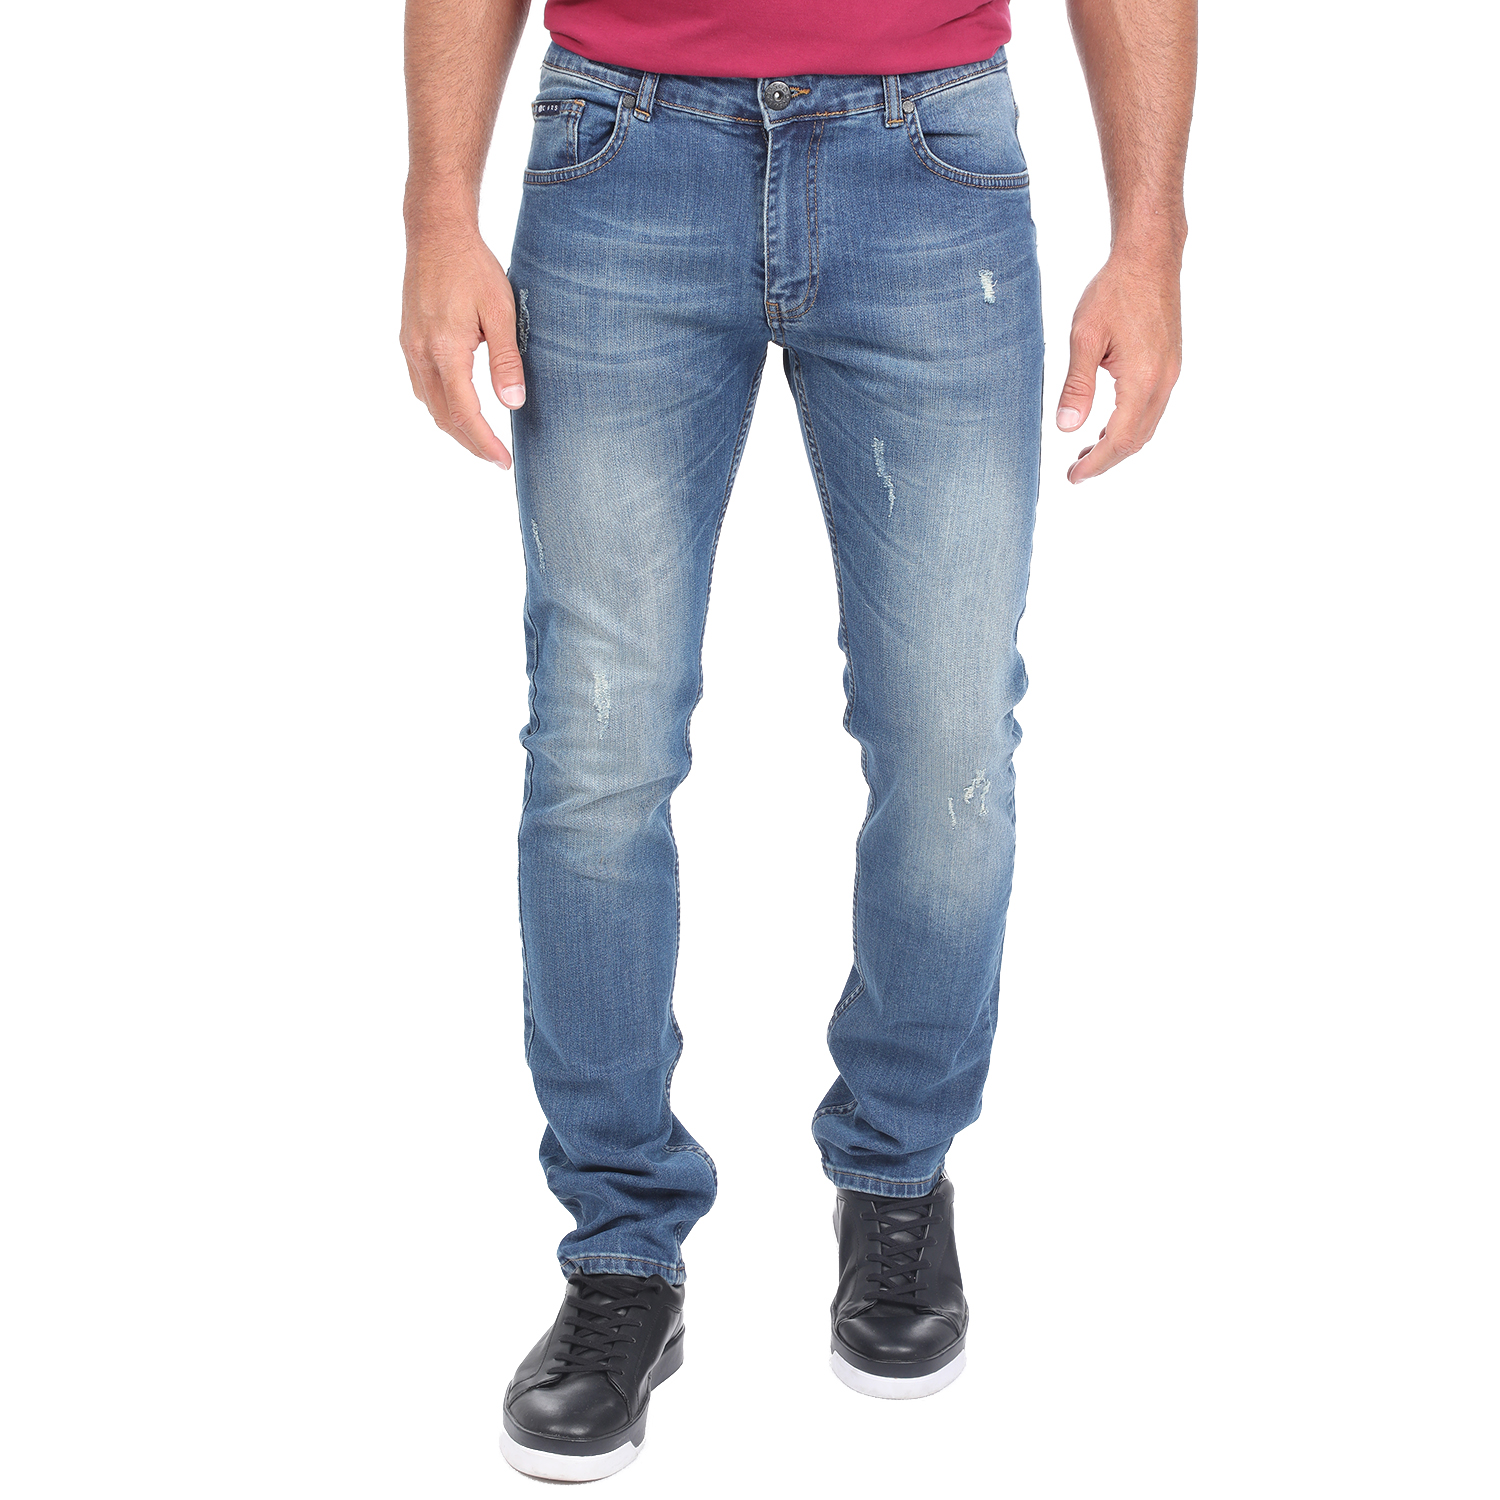 Ανδρικά/Ρούχα/Τζίν/Skinny DORS - Ανδρικό τζιν παντελόνι DORS comfort 4012 μπλε